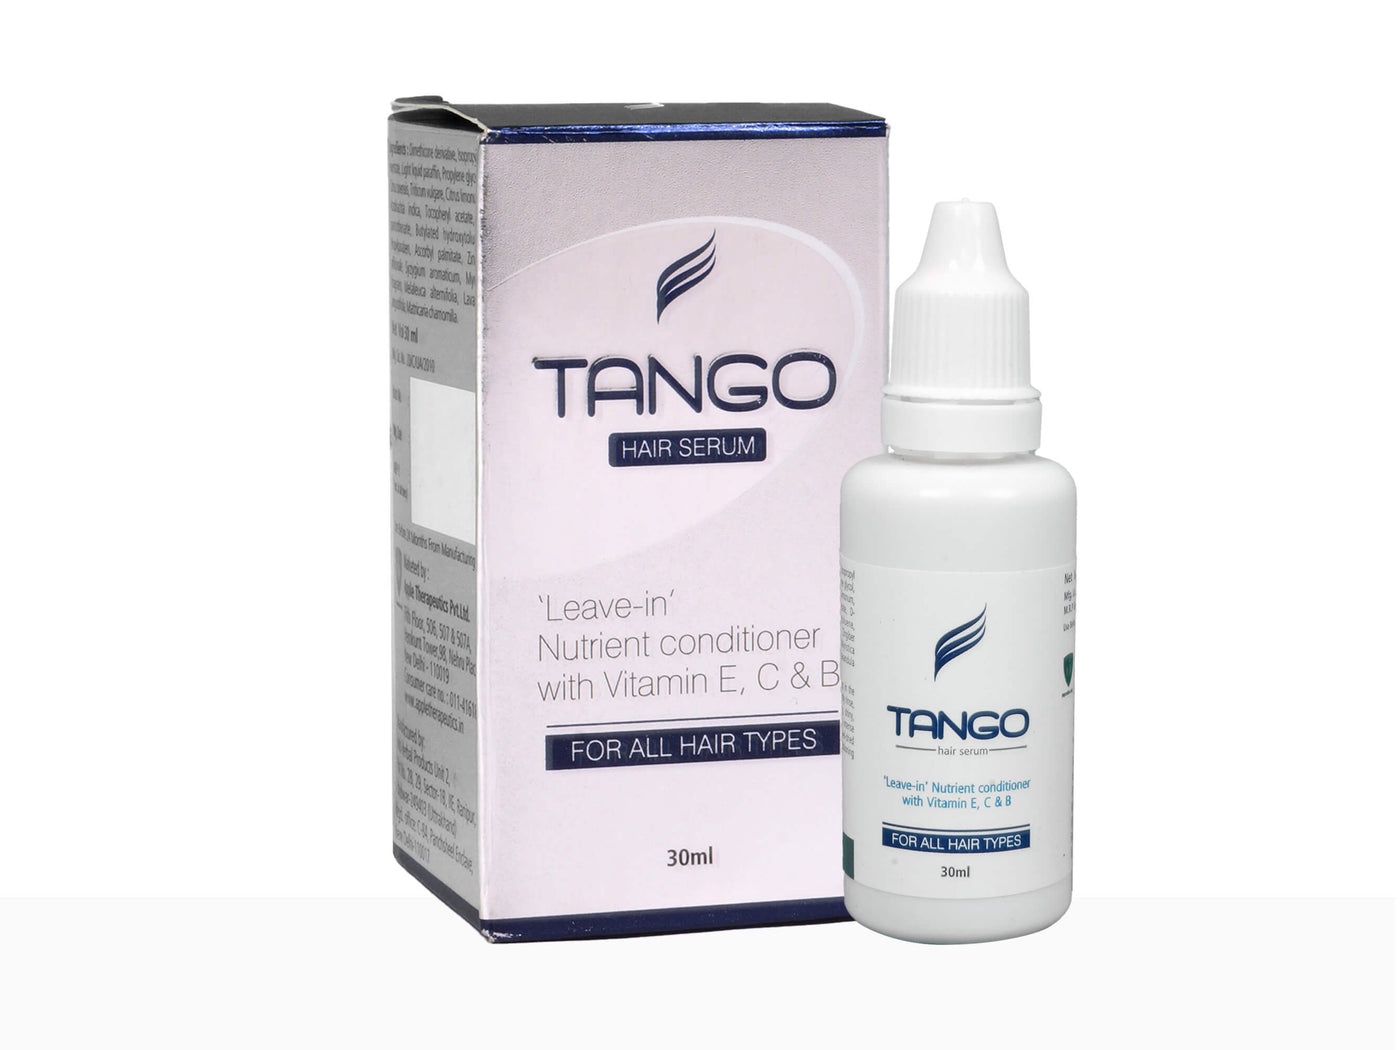 Tango hair serum - Clinikally